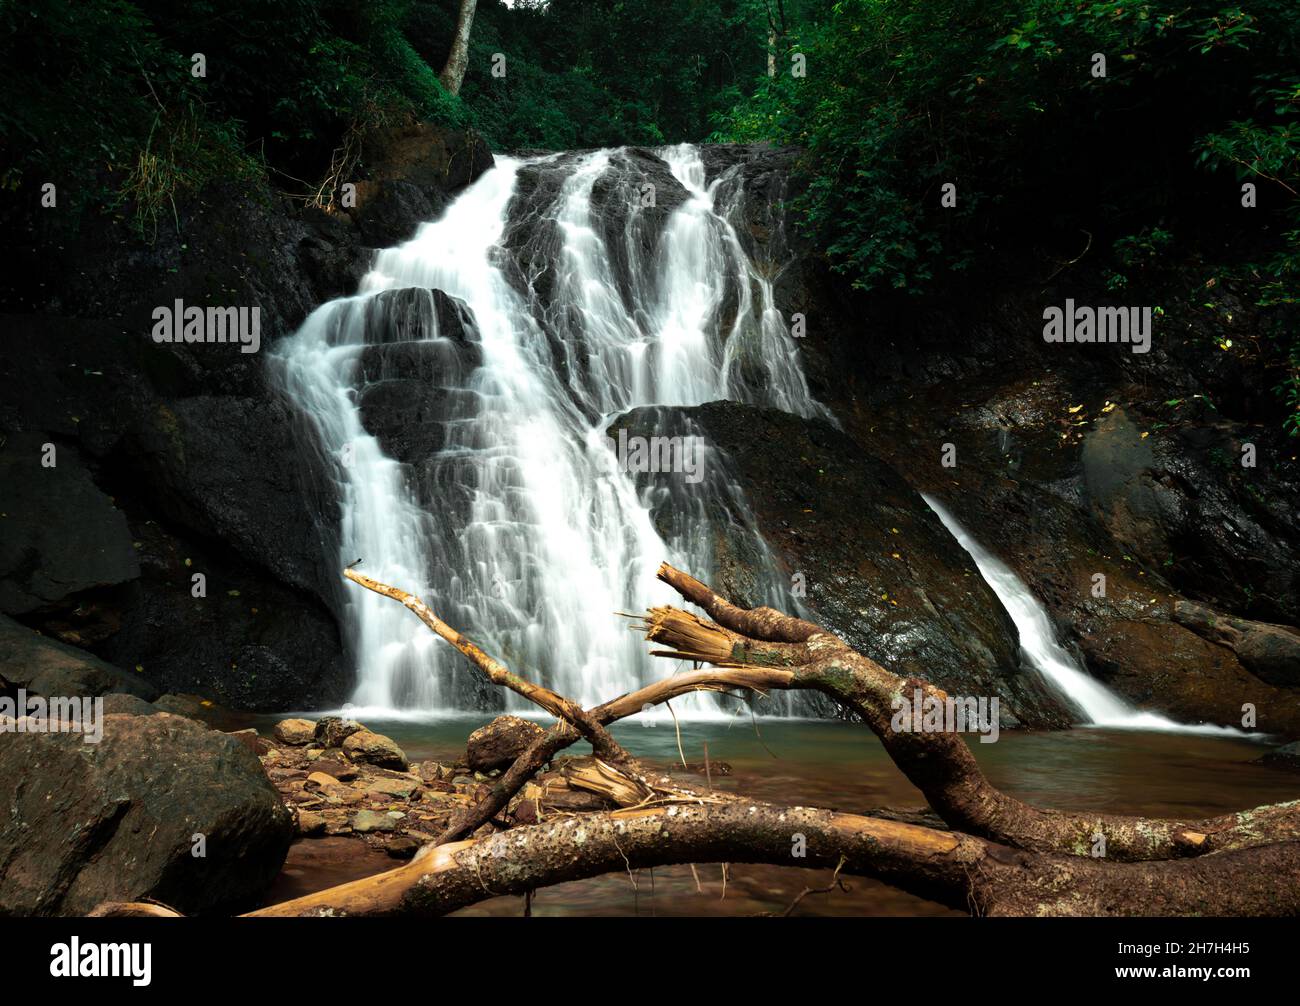 Bamanbudo waterfall - Goa, India Stock Photo